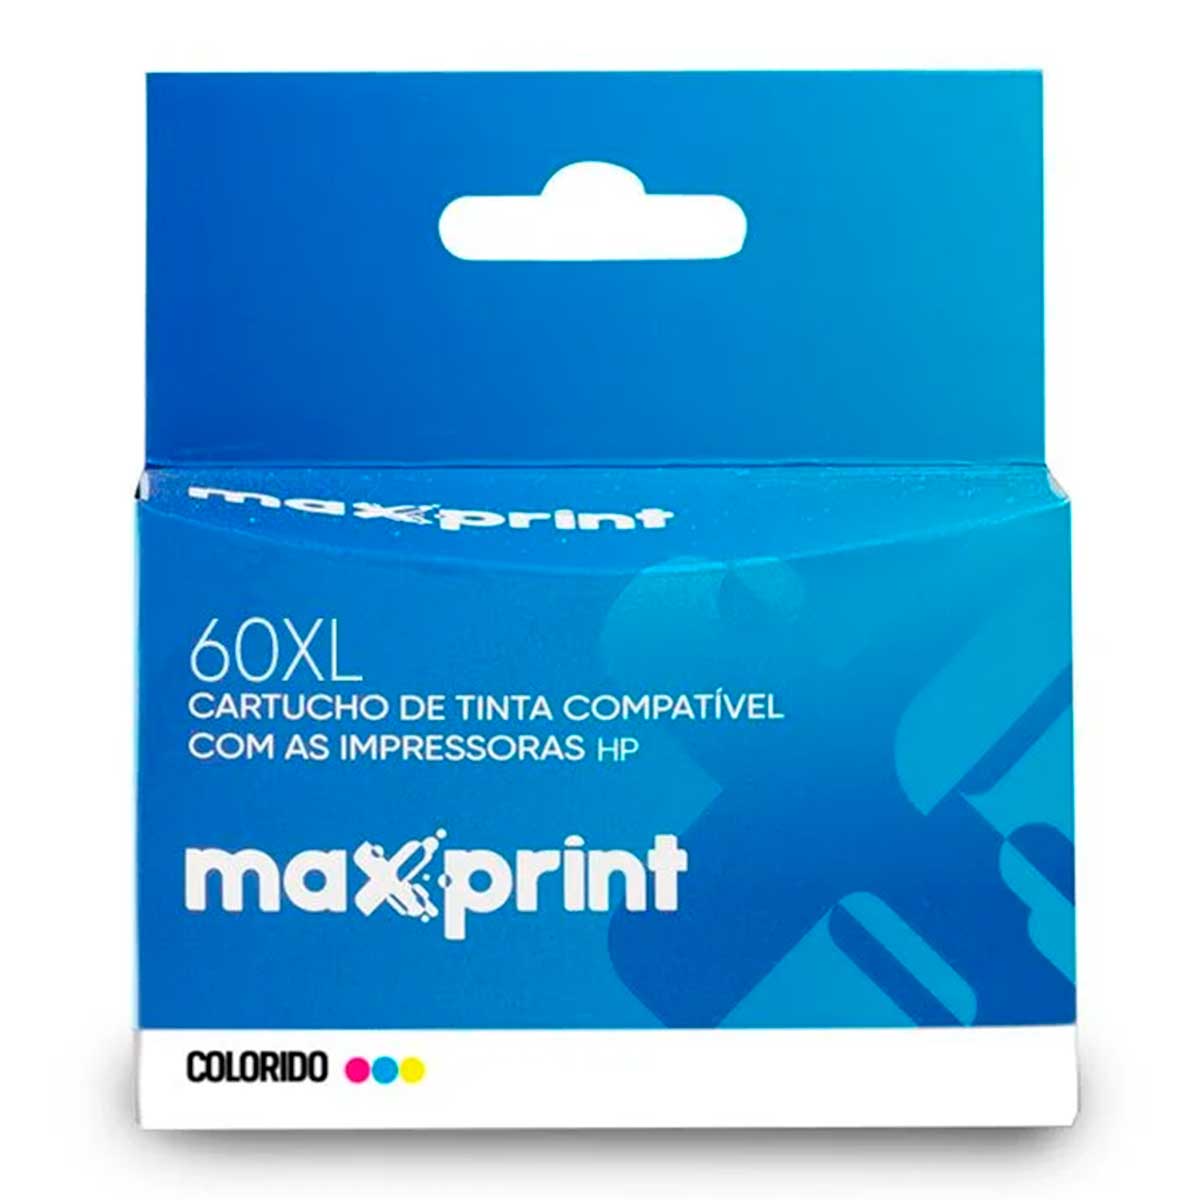 Cartucho compatível HP 60XL Colorido - CC644WL - Maxprint 6111717 - Para HP Deskjet D1660 / D2530 / D2545 / D2560 / D2660 / F4280 / F4480 / Photosmart C4680 / C4780